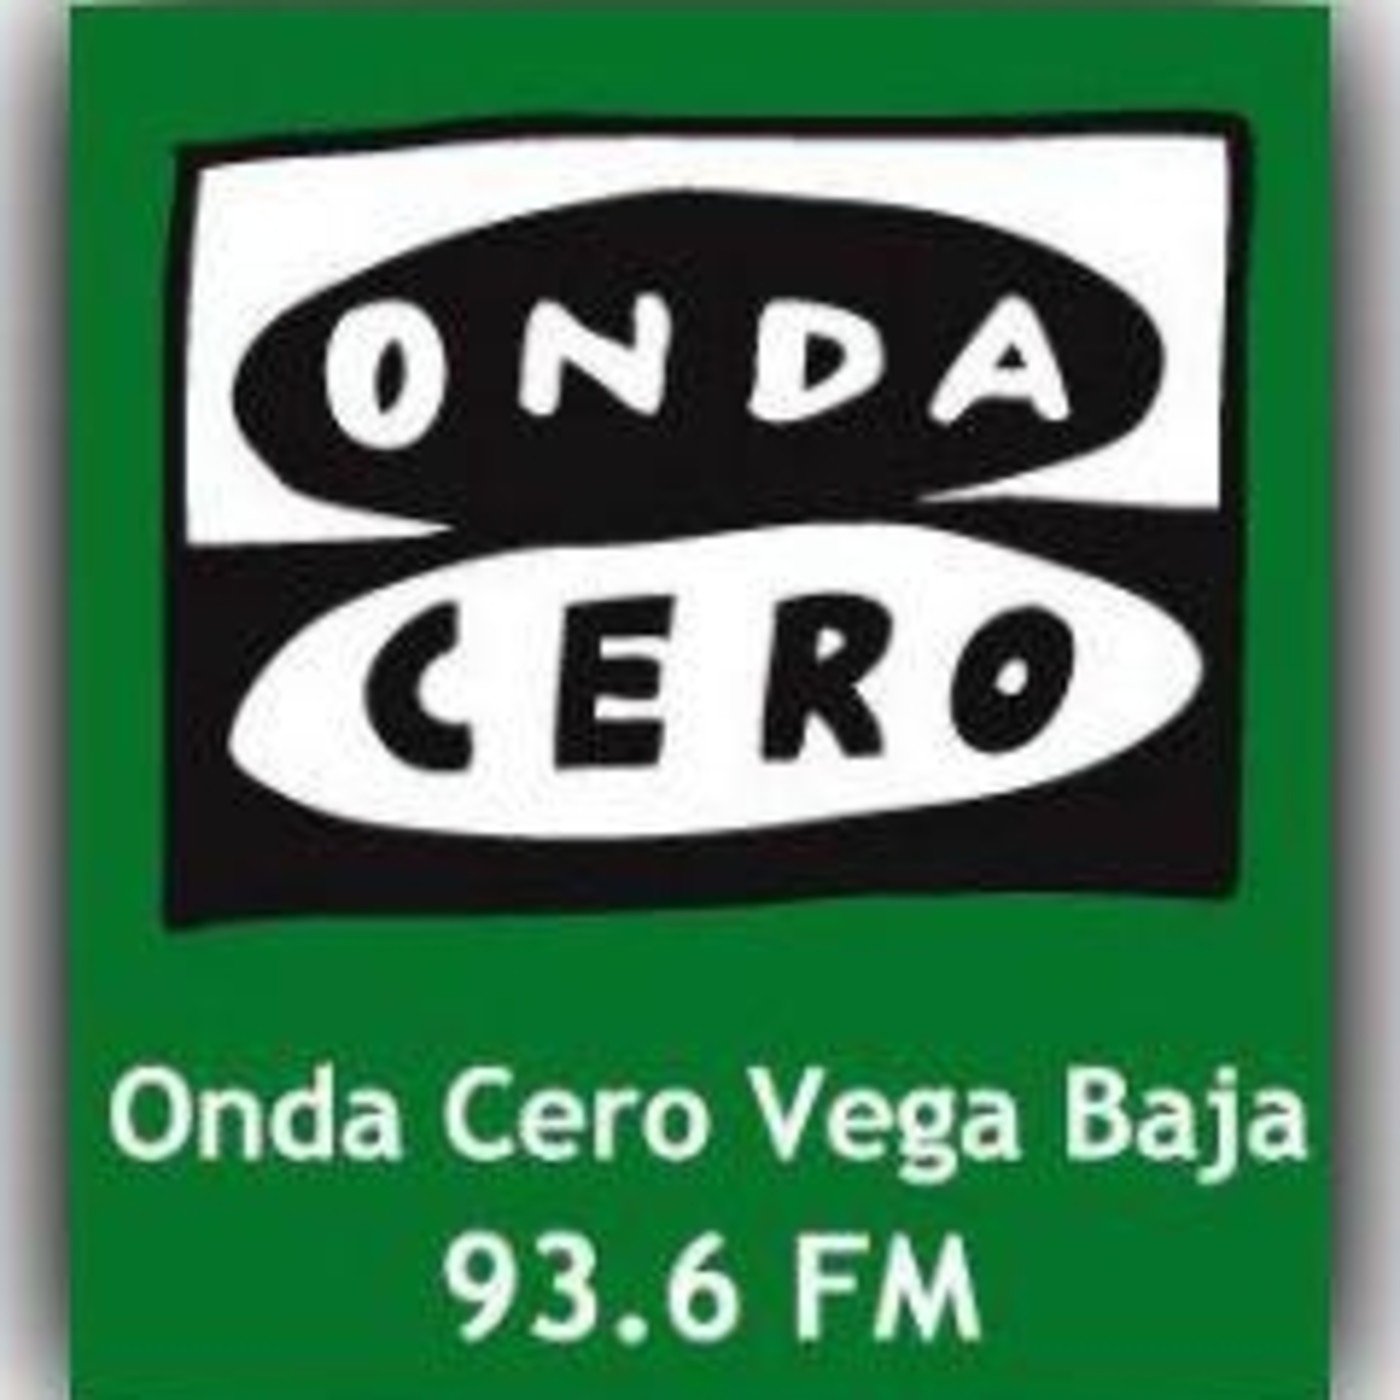 Tertulias Deportivas Onda Cero Vega Baja